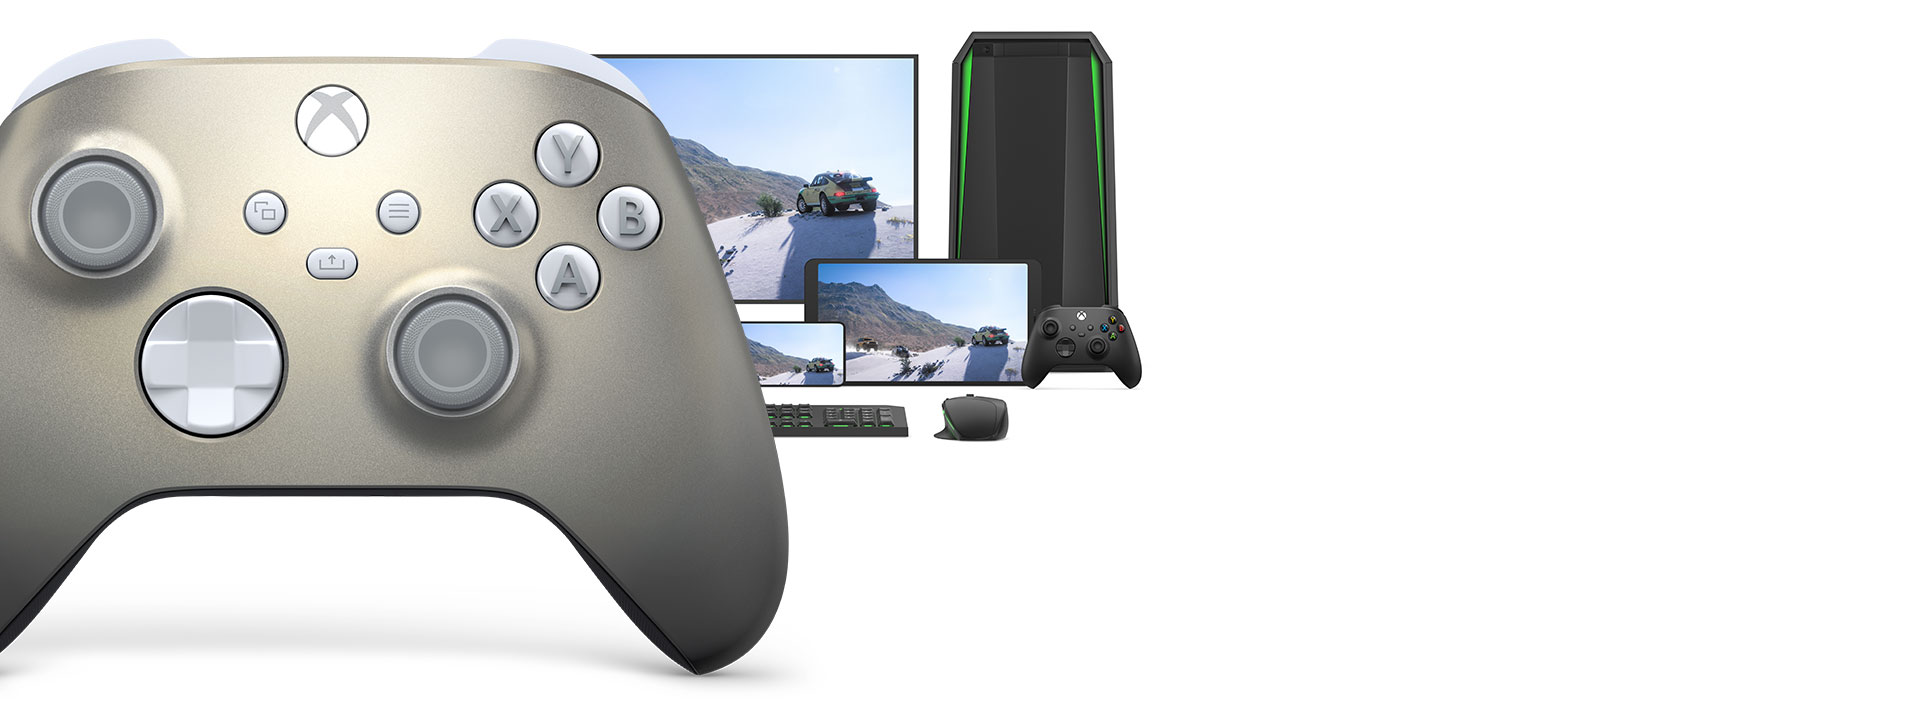 컴퓨터, TV 및 Xbox Series S와 함께 있는 Xbox 무선 컨트롤러 - Lunar Shift 스페셜 에디션